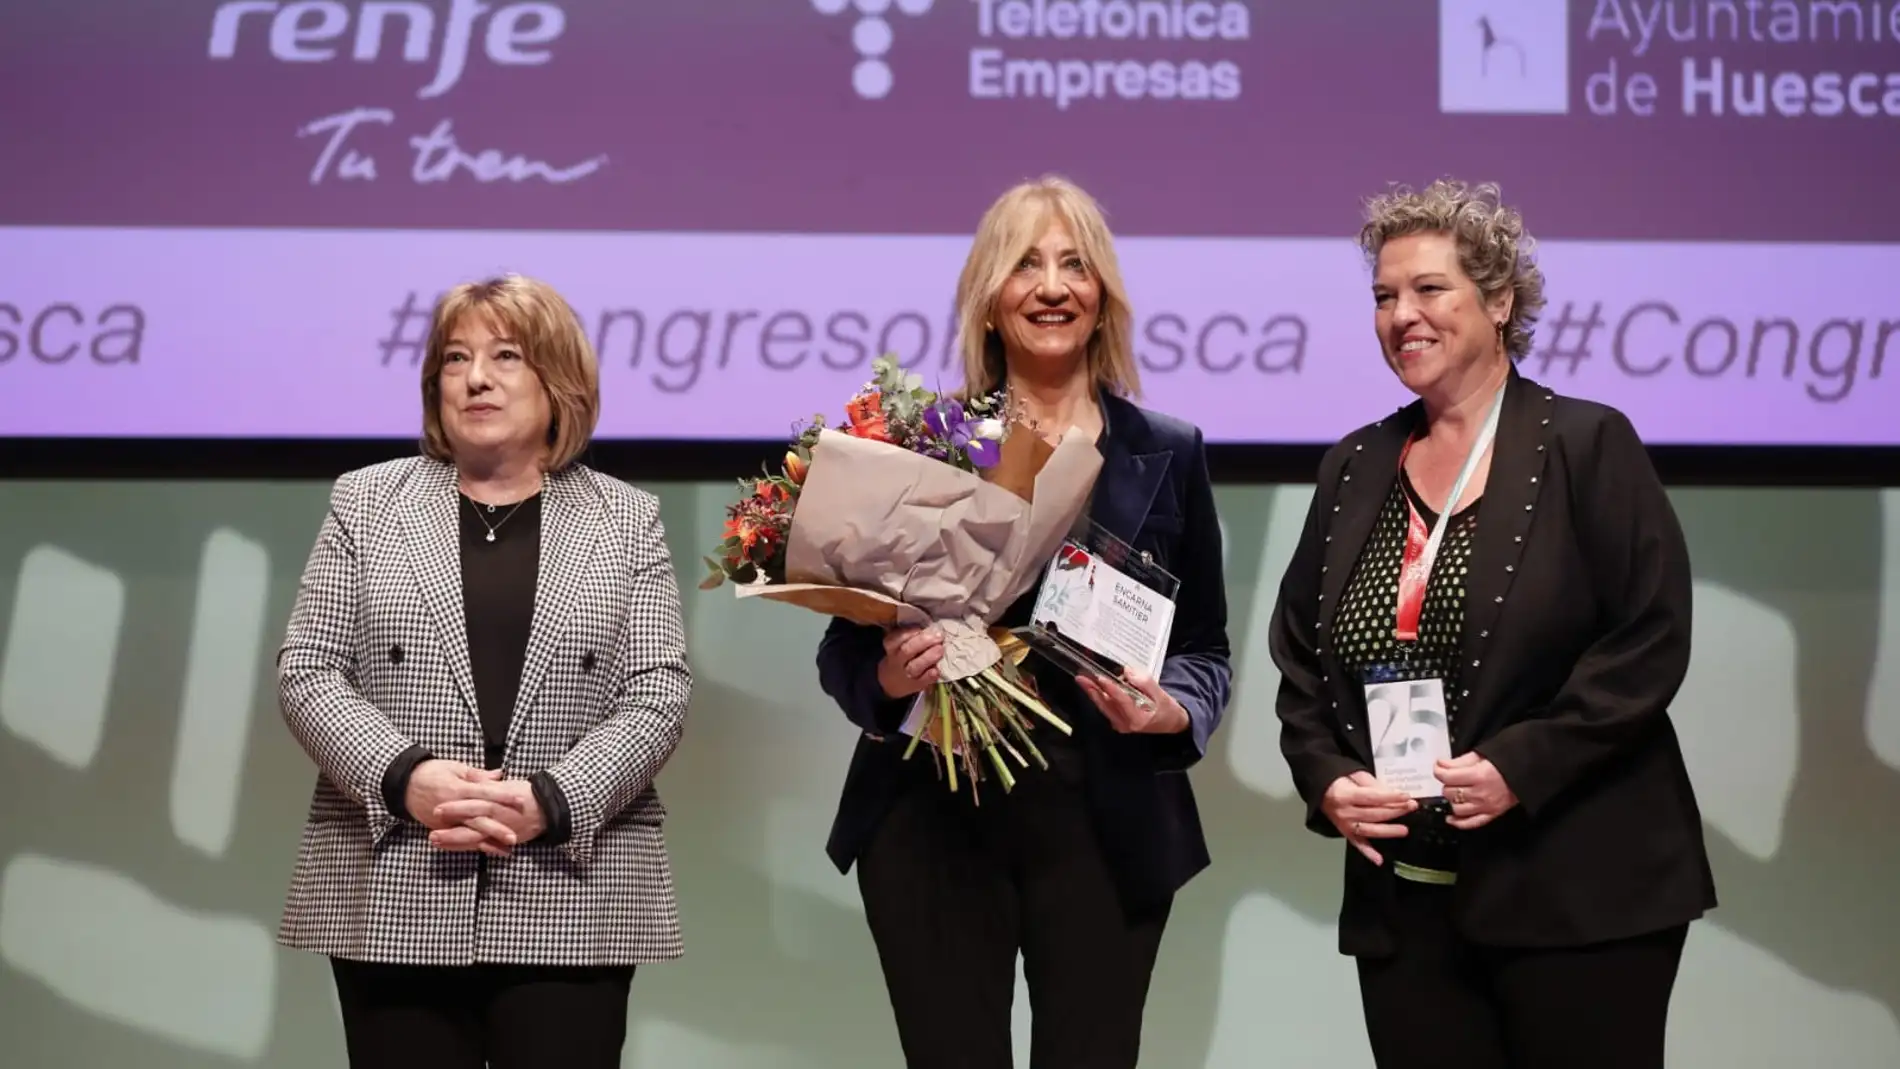 Encarna Samitiér recoge el premio Porquet y lo comparte con las mujeres periodistas